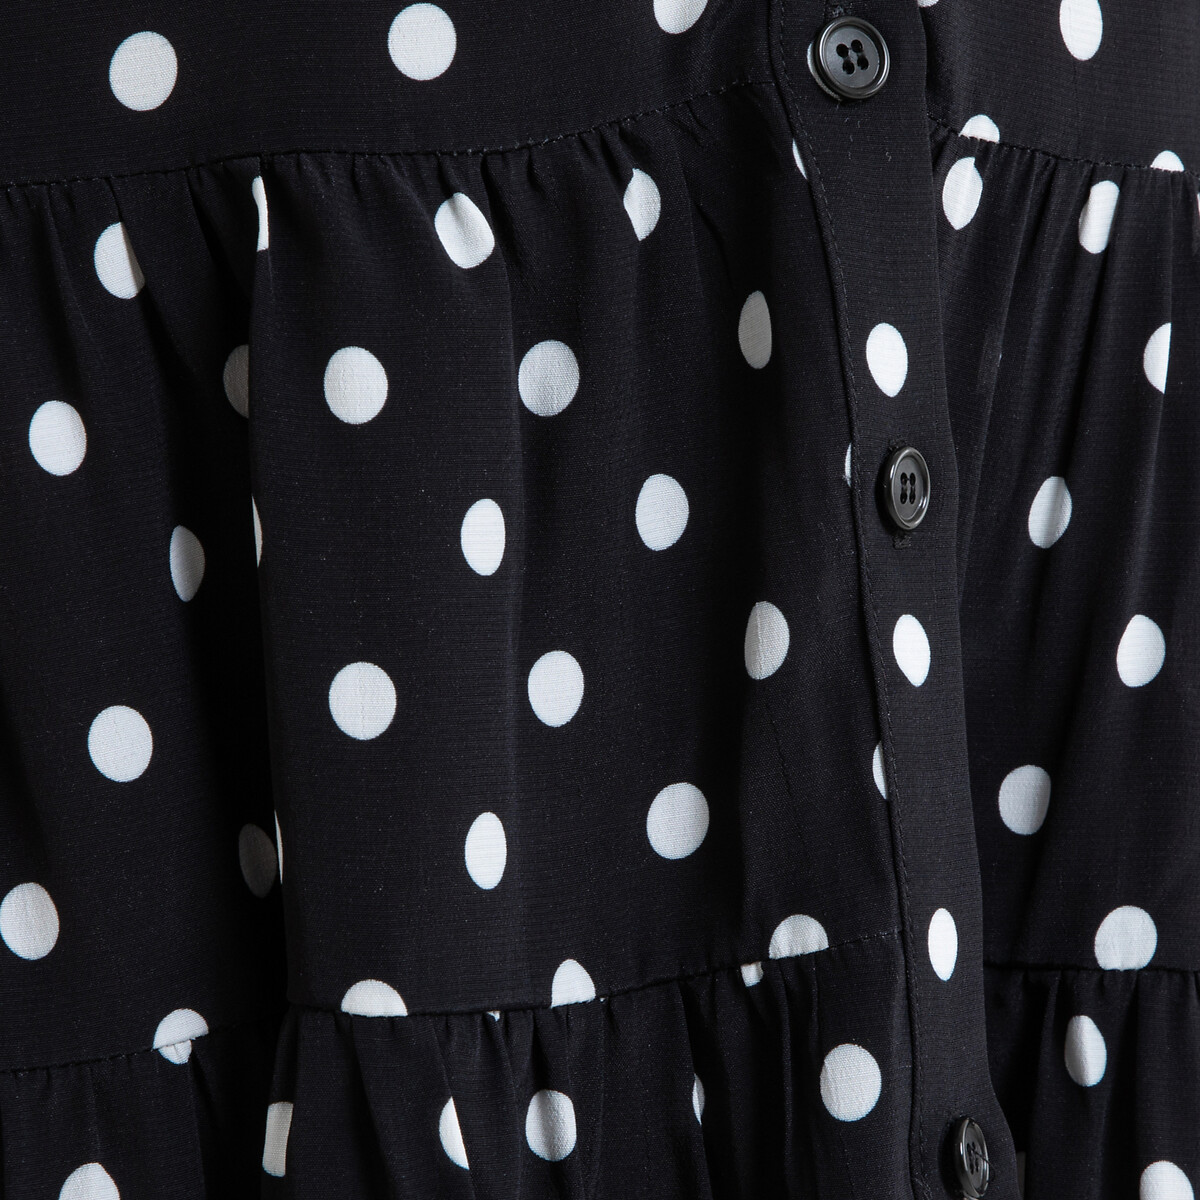 Платье La Redoute Короткое расклешенное в горошек RITA 42 (FR) - 48 (RUS) черный, размер 42 (FR) - 48 (RUS) Короткое расклешенное в горошек RITA 42 (FR) - 48 (RUS) черный - фото 4